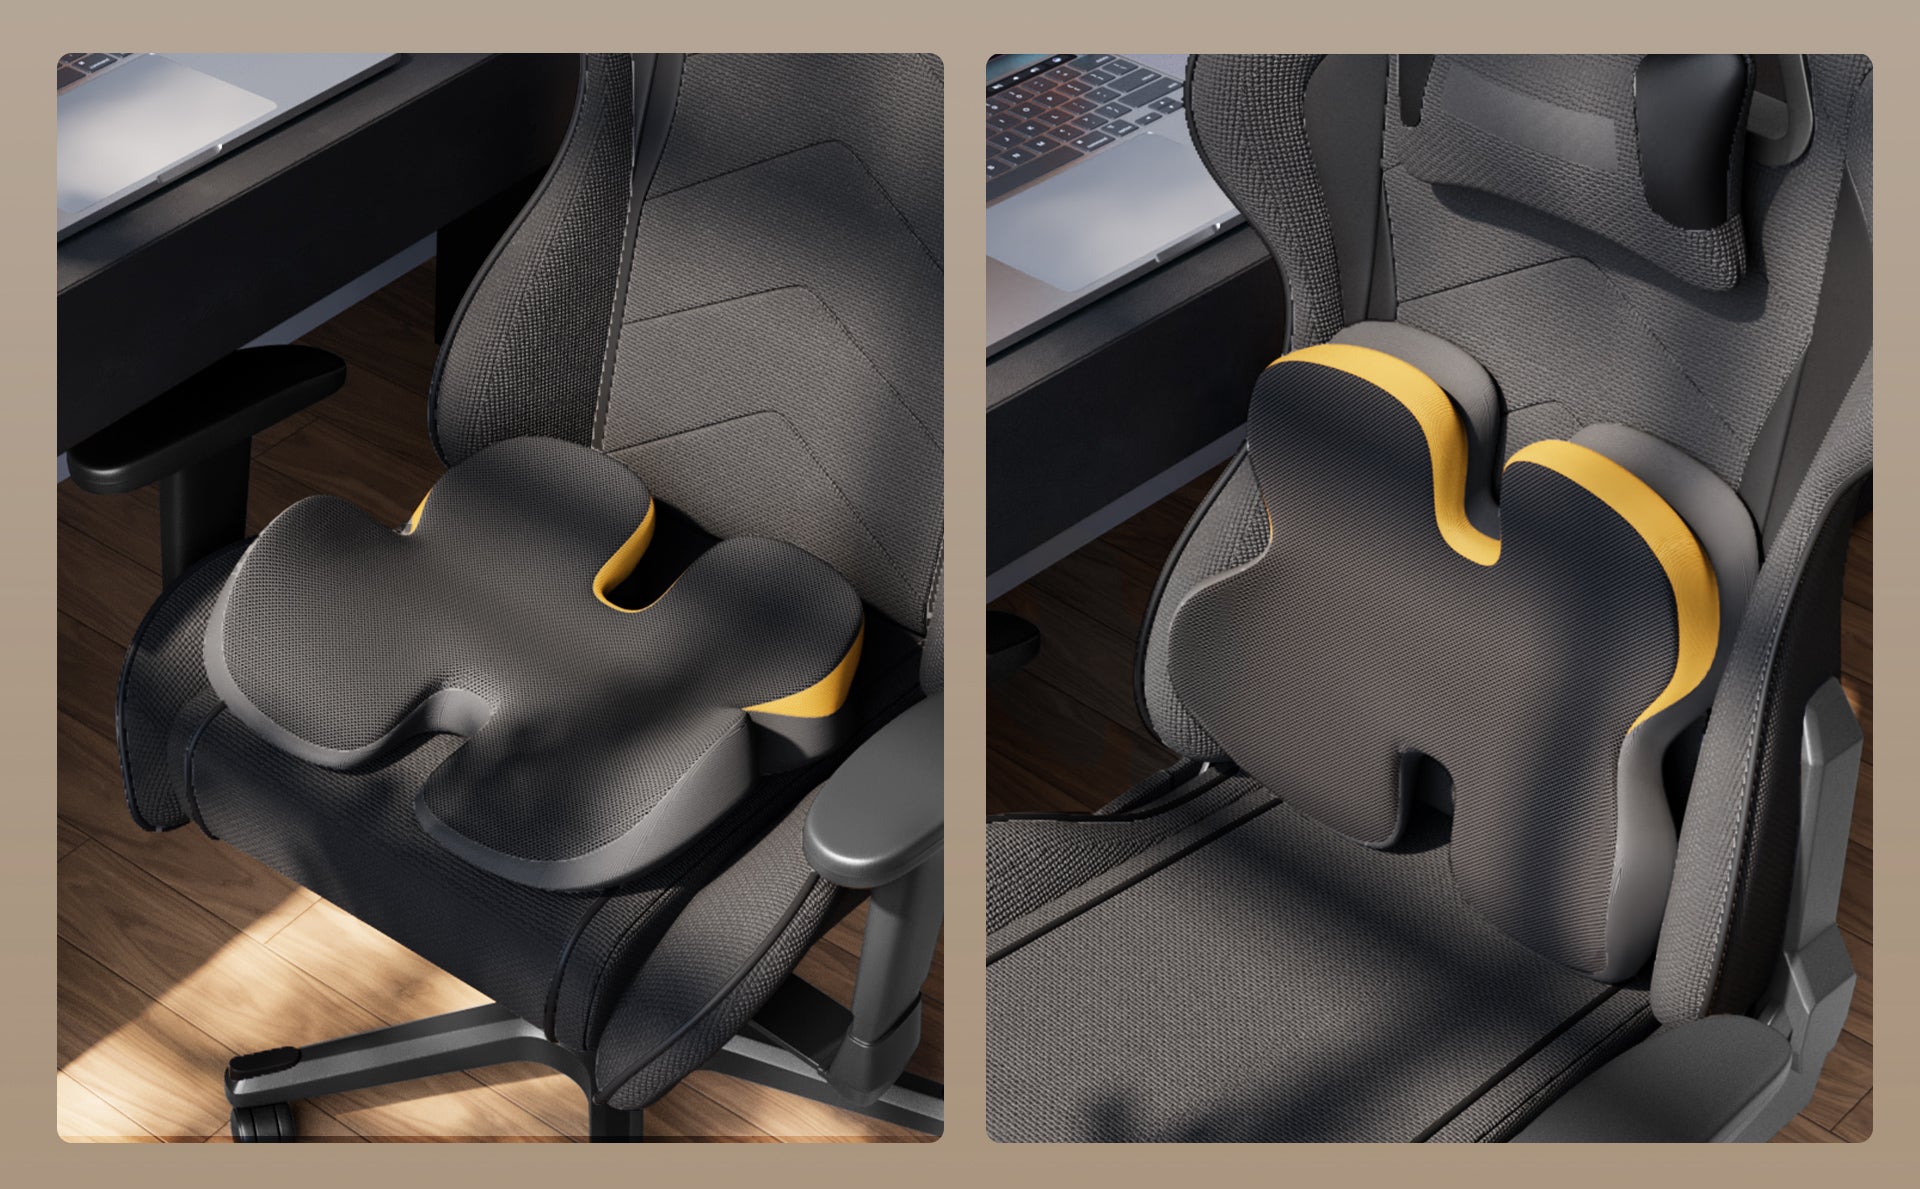 ComfortX SC Ergonomic Seat Cushion